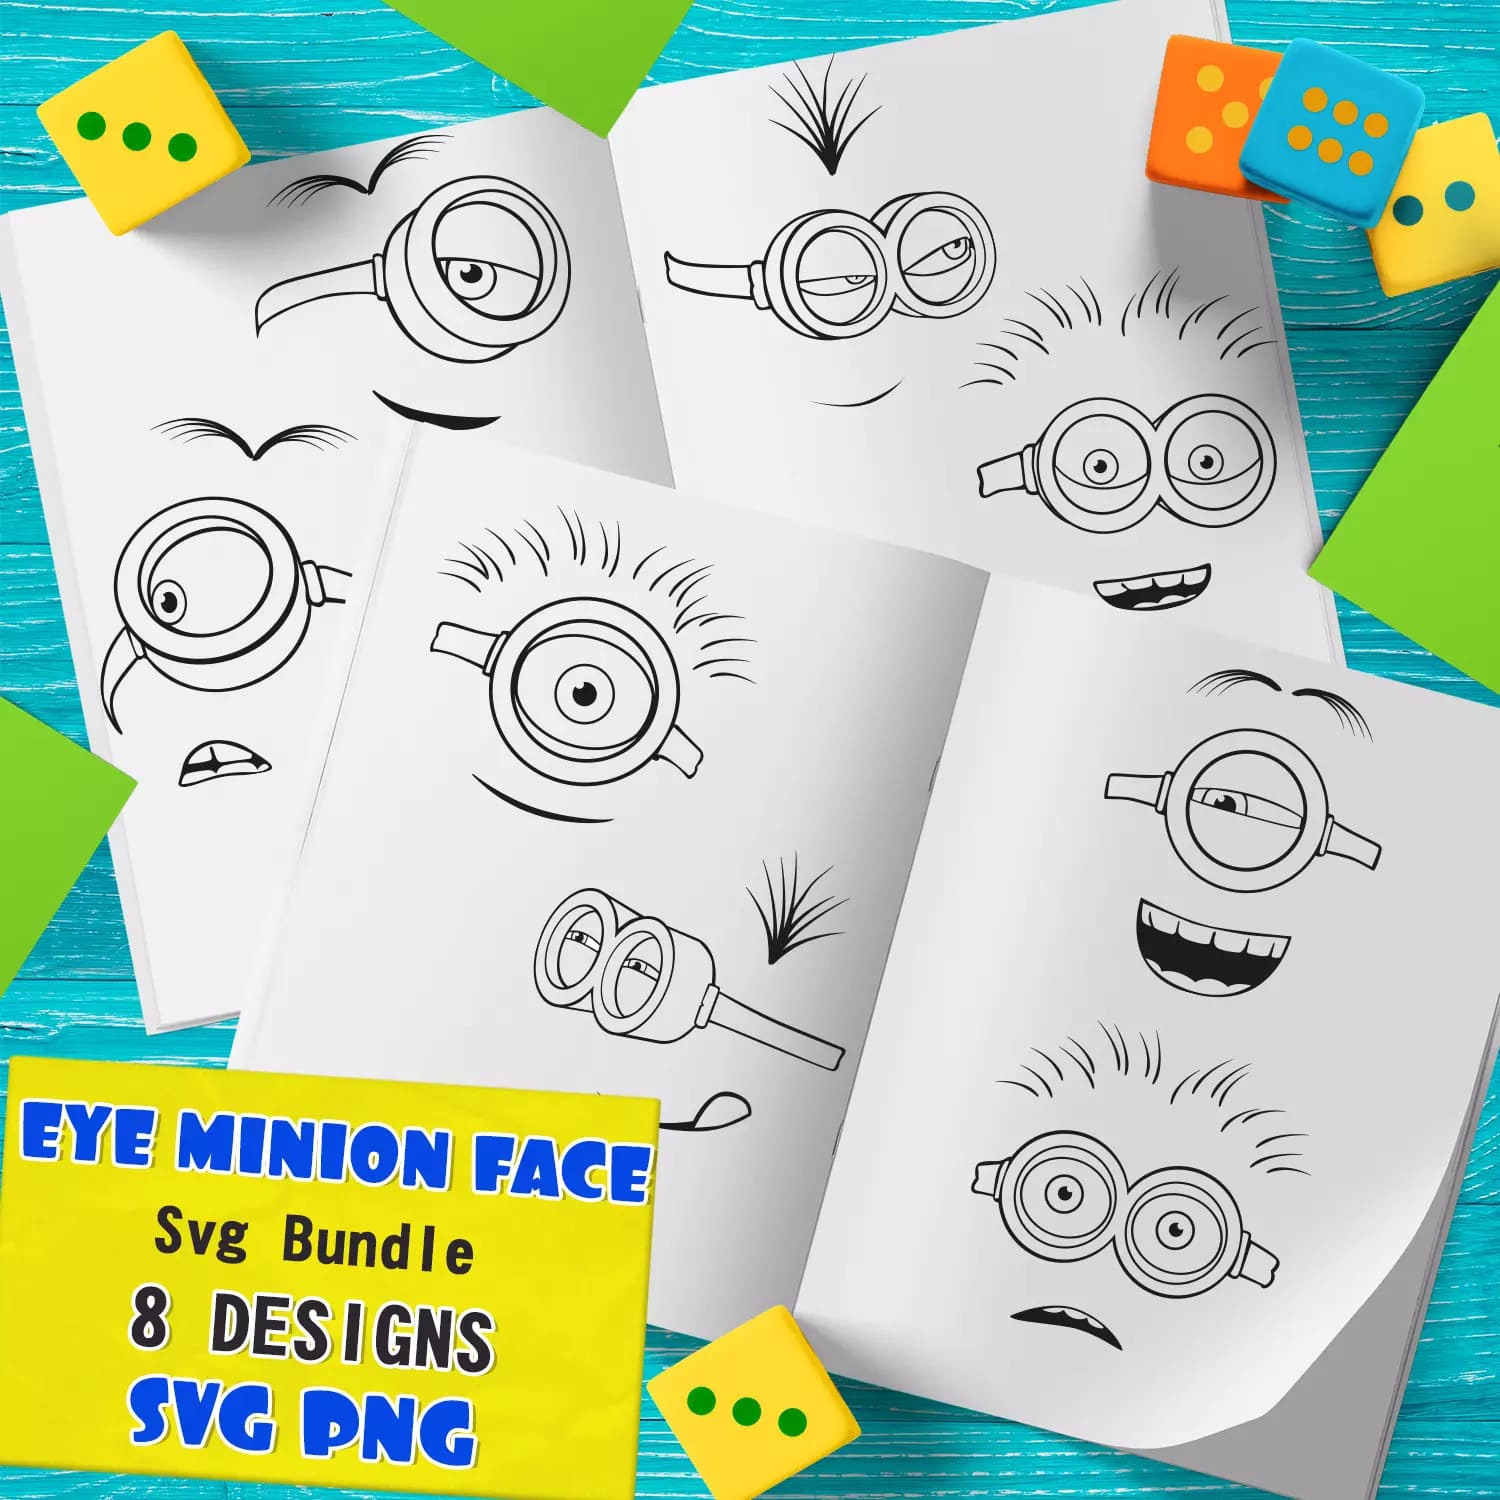 Eye Minion Face SVG Preview 9.